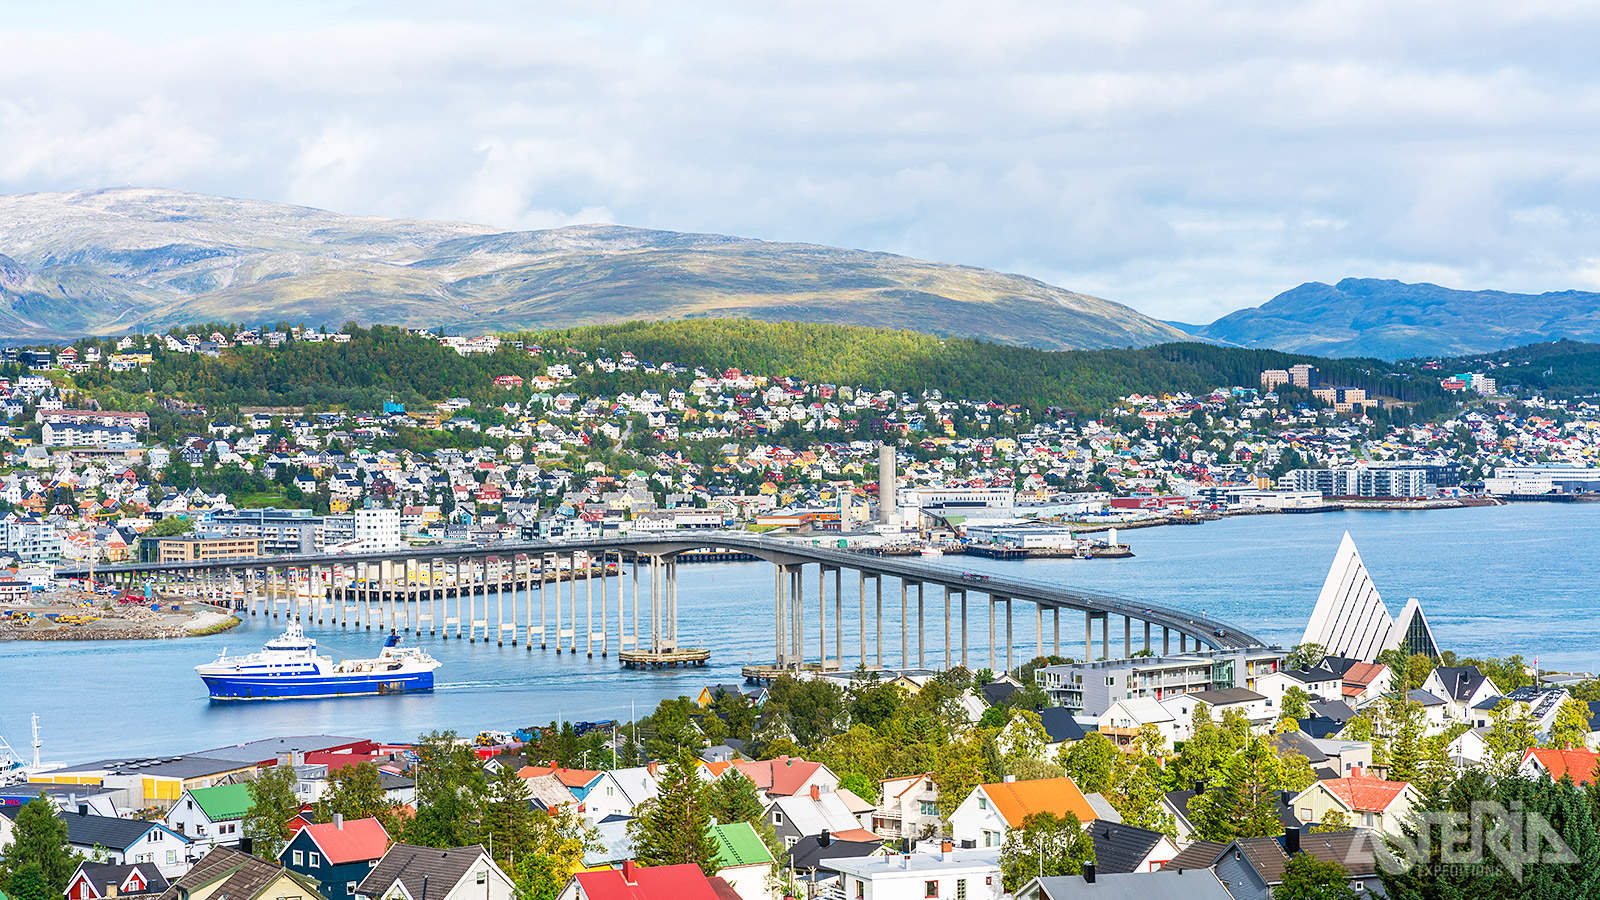 Tromsø, de hoofdstad van Noord-Noorwegen, ligt op bijna 90° noorderbreedte